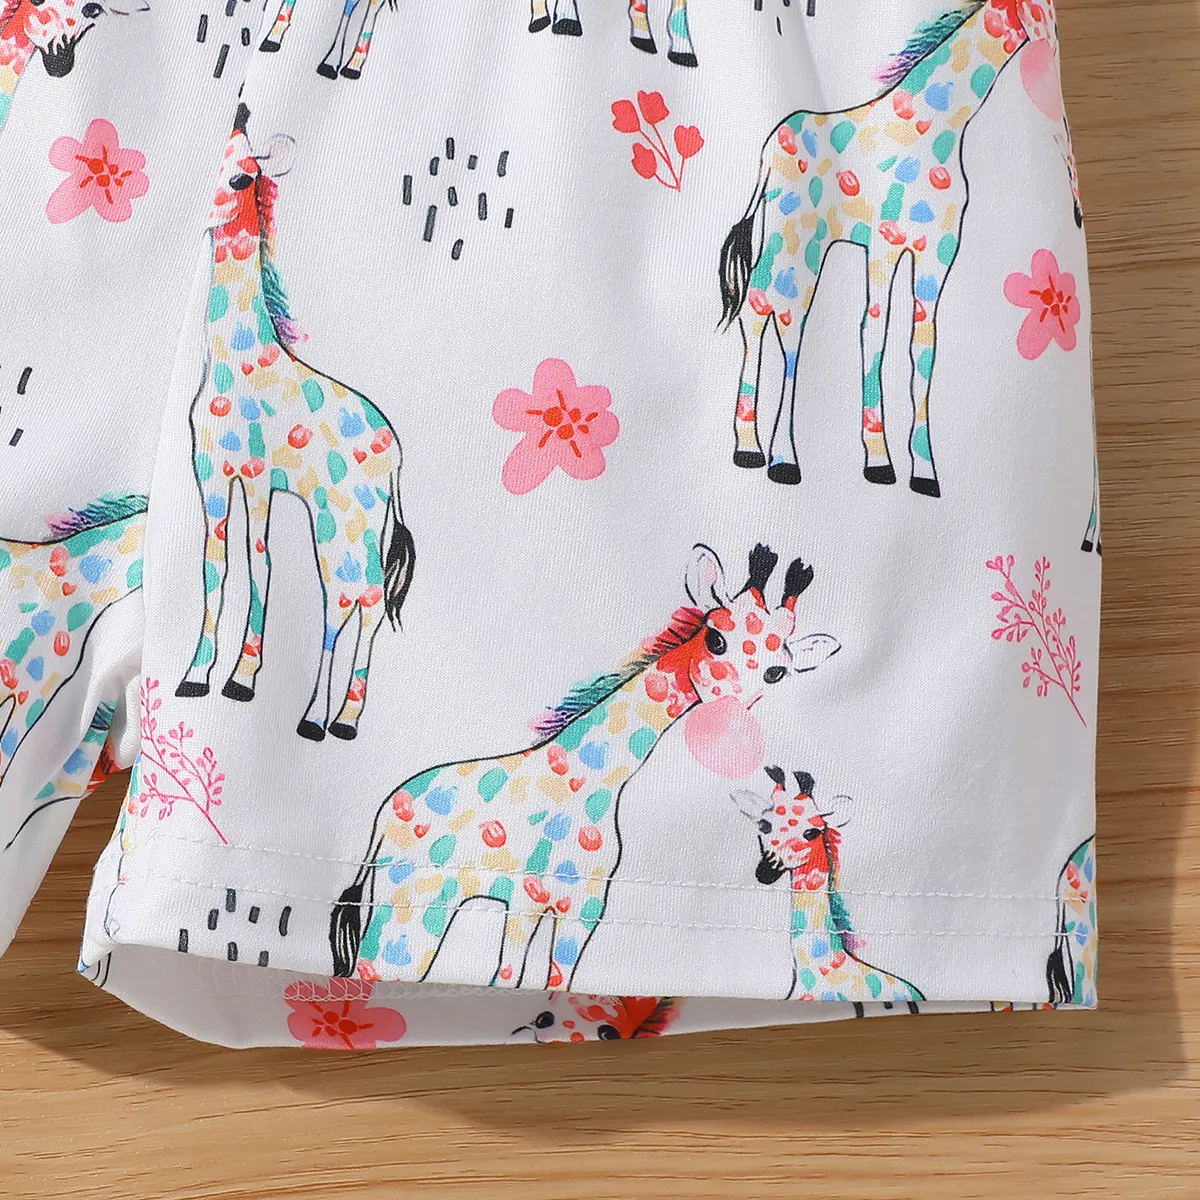 2 pezzi Bambino piccolo Ragazza Manica volant Infantile Giraffa set di t-shirt Rosa big image 1